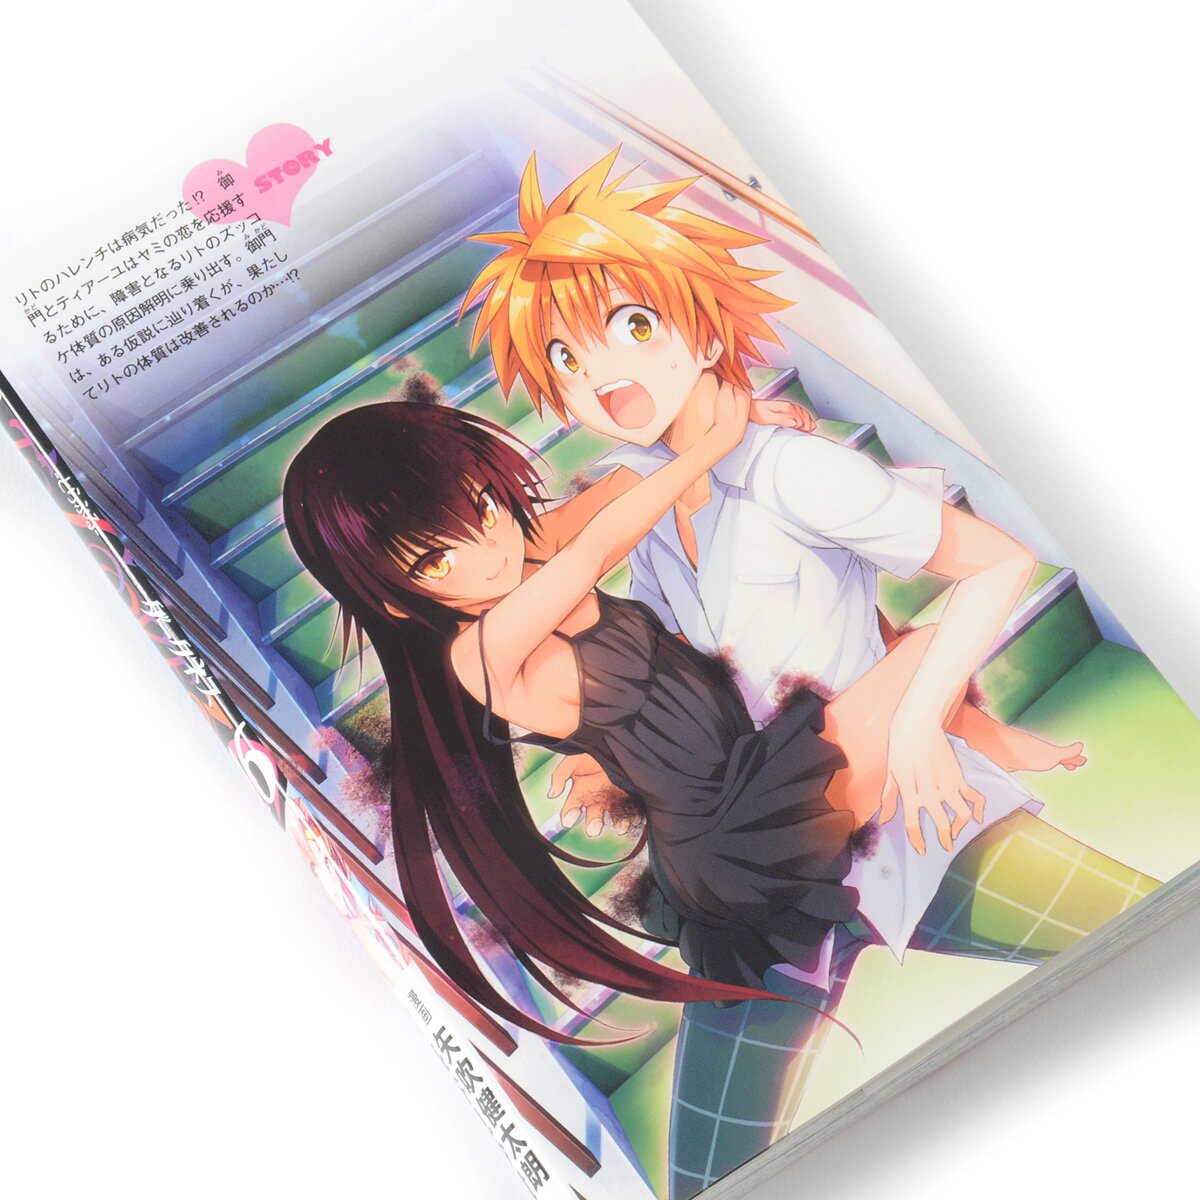 To Love Ru Darkness Manga Volume 16